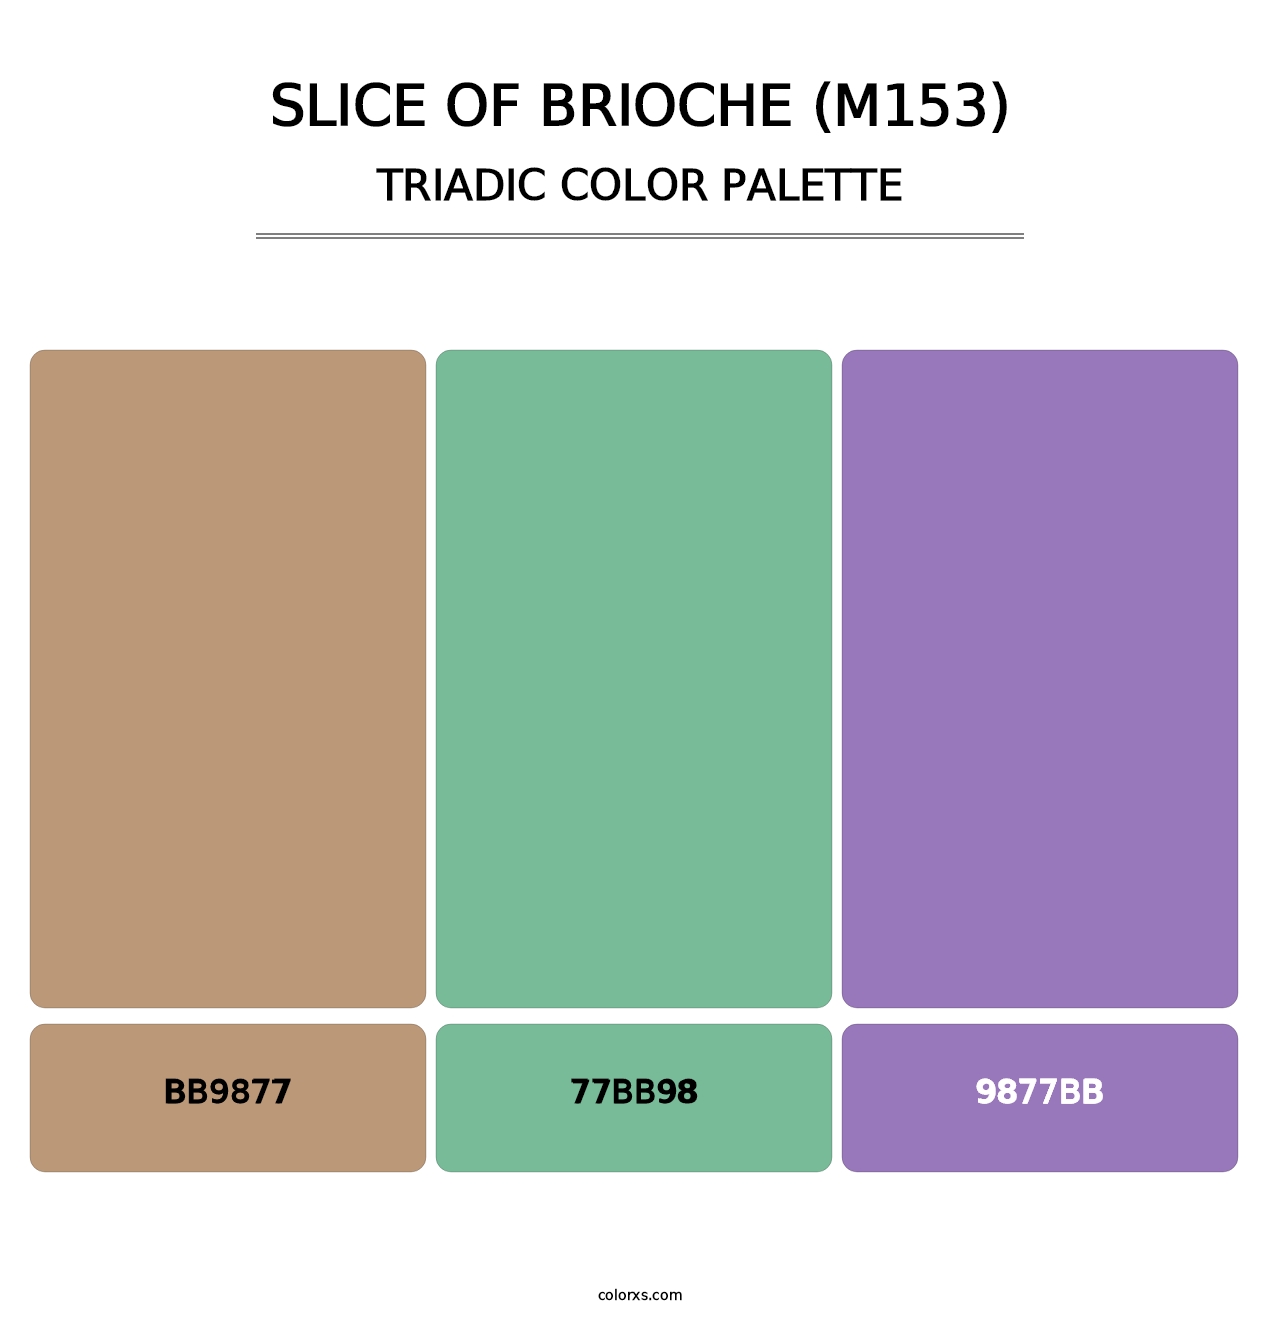 Slice of Brioche (M153) - Triadic Color Palette